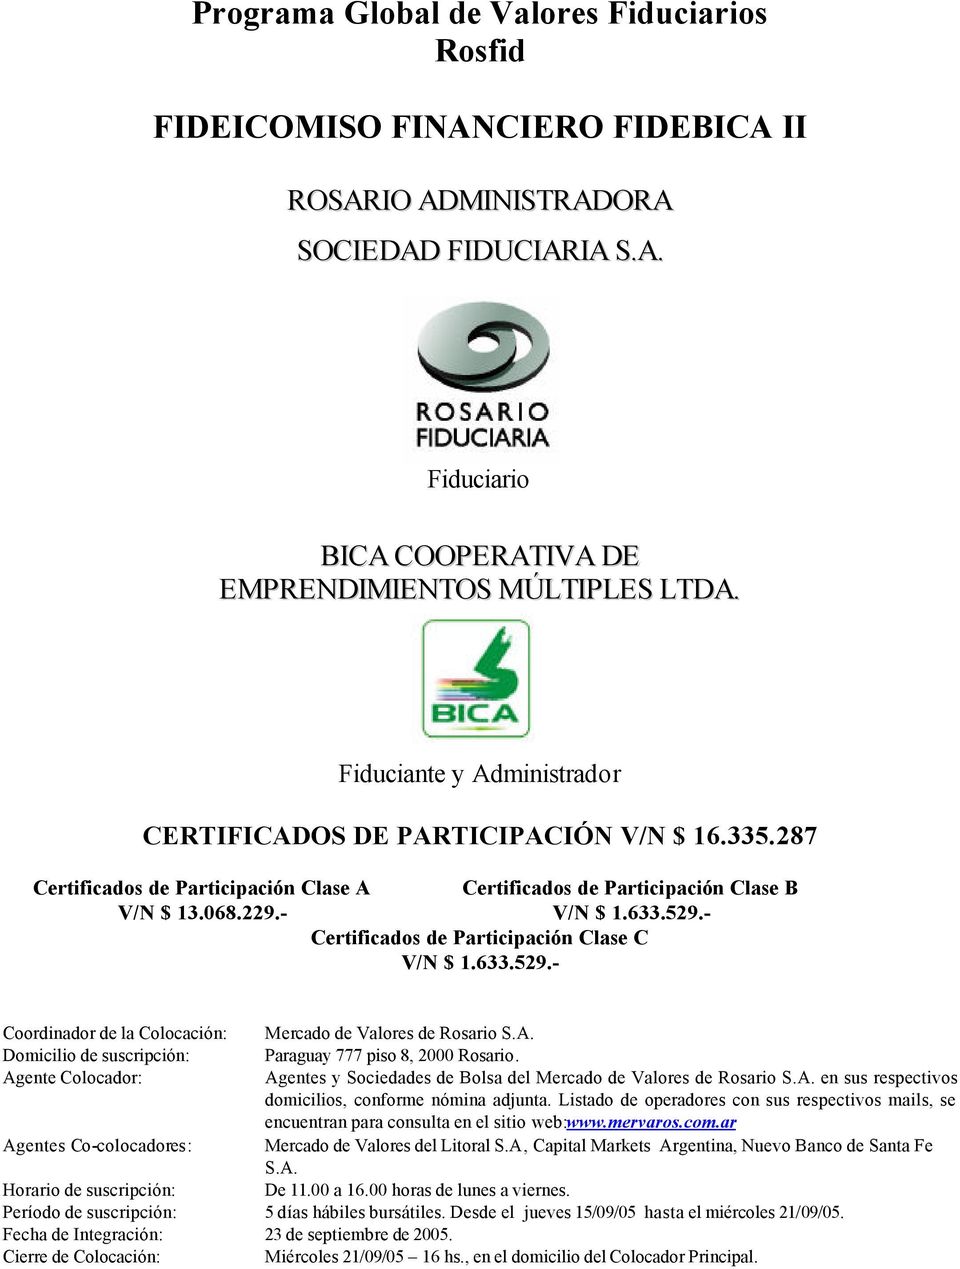 - Certificados de Participación Clase C V/N $ 1.633.529.- Coordinador de la Colocación: Mercado de Valores de Rosario S.A. Domicilio de suscripción: Paraguay 777 piso 8, 2000 Rosario.